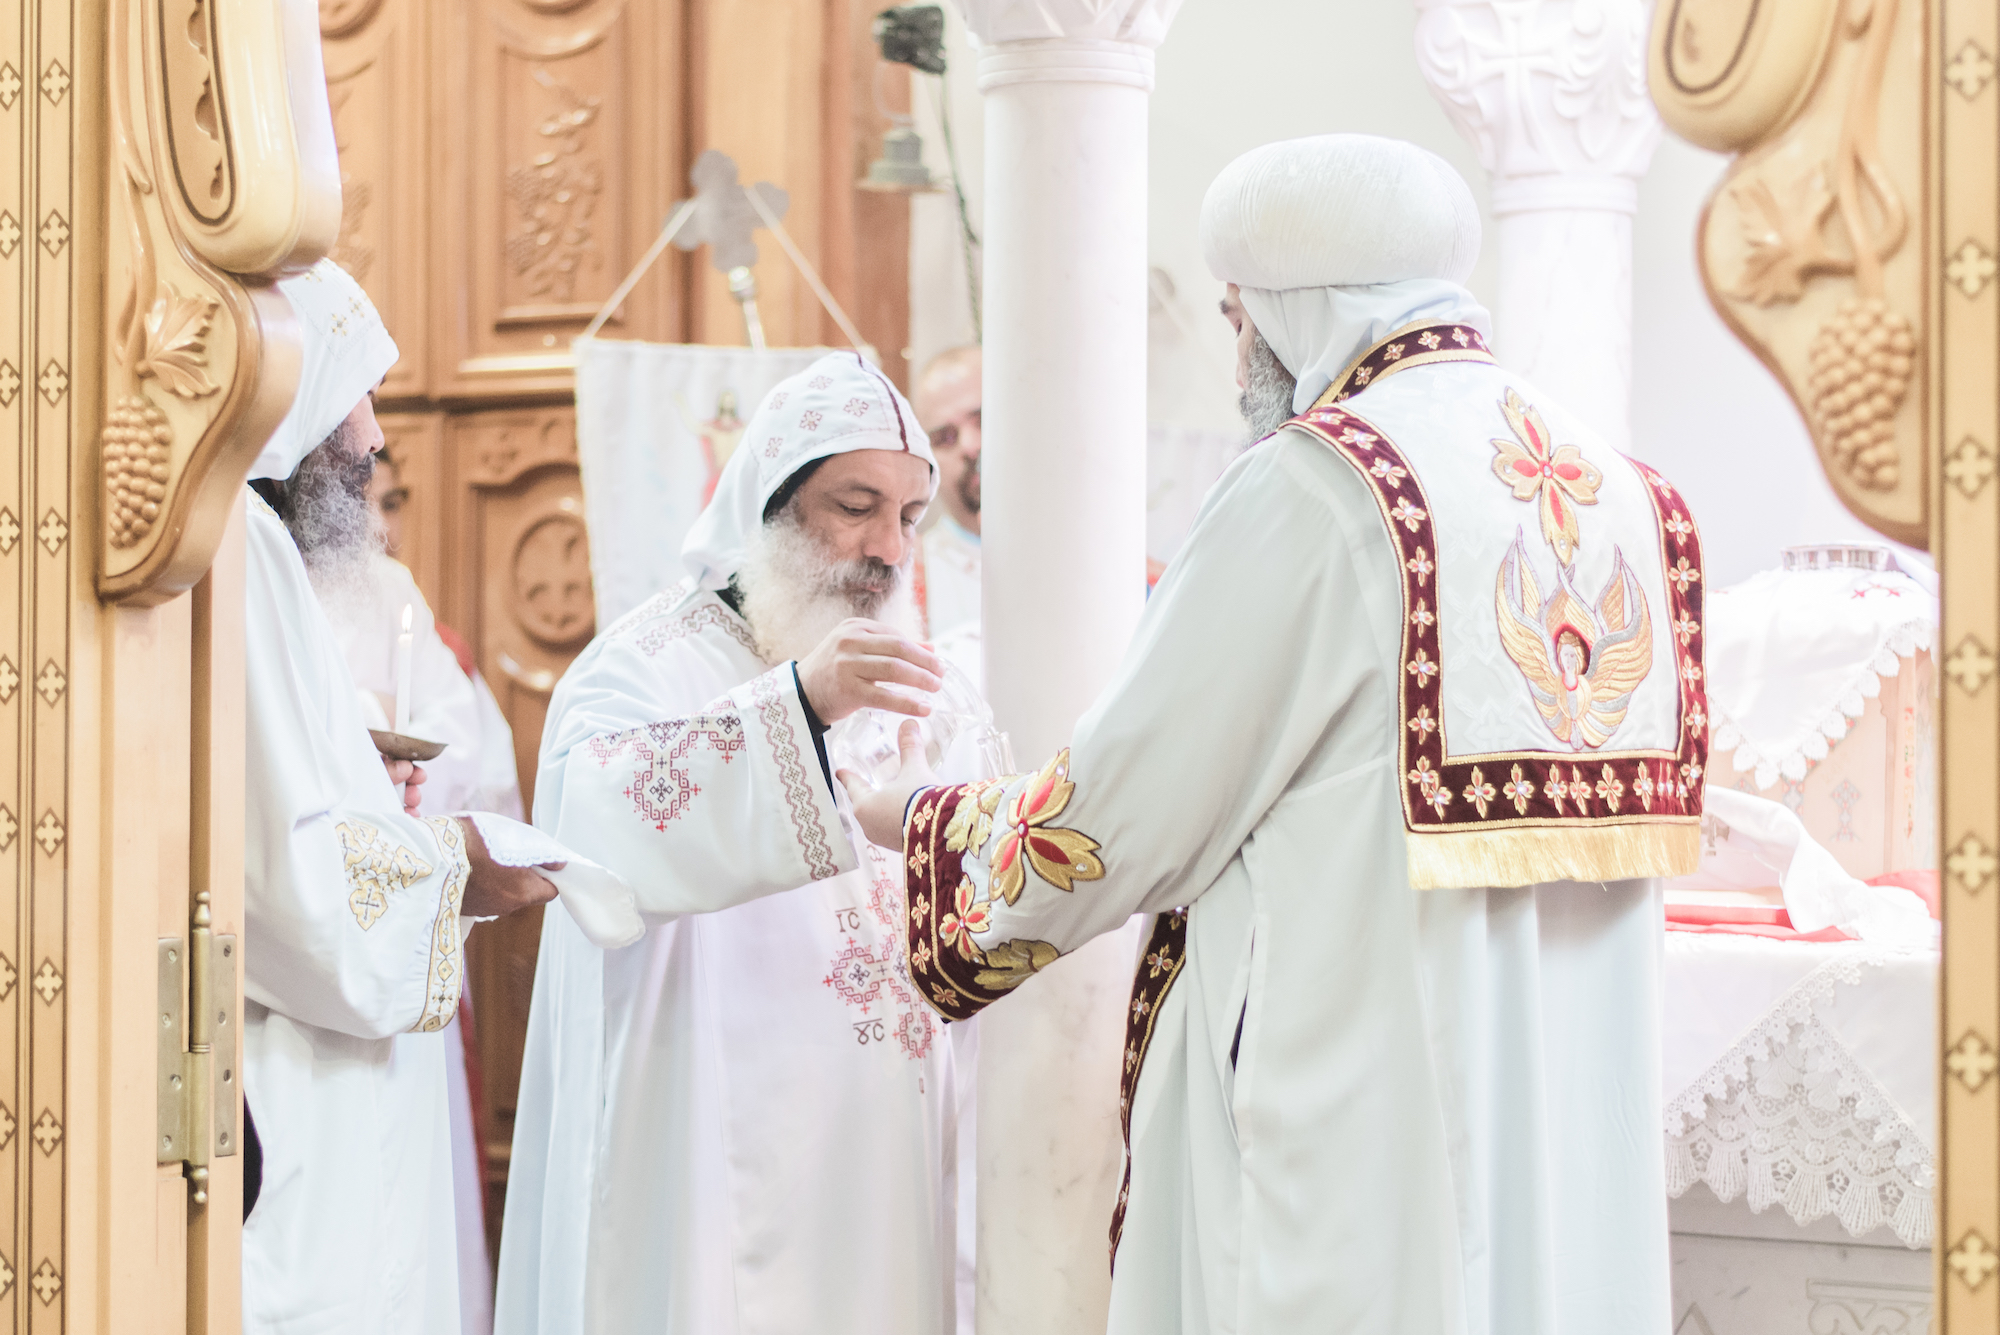 Réaffirmation de la définition du mariage comme union entre un homme et une femme du Patriarche copte orthodoxe et annonce d’une conférence sur l’homosexualité